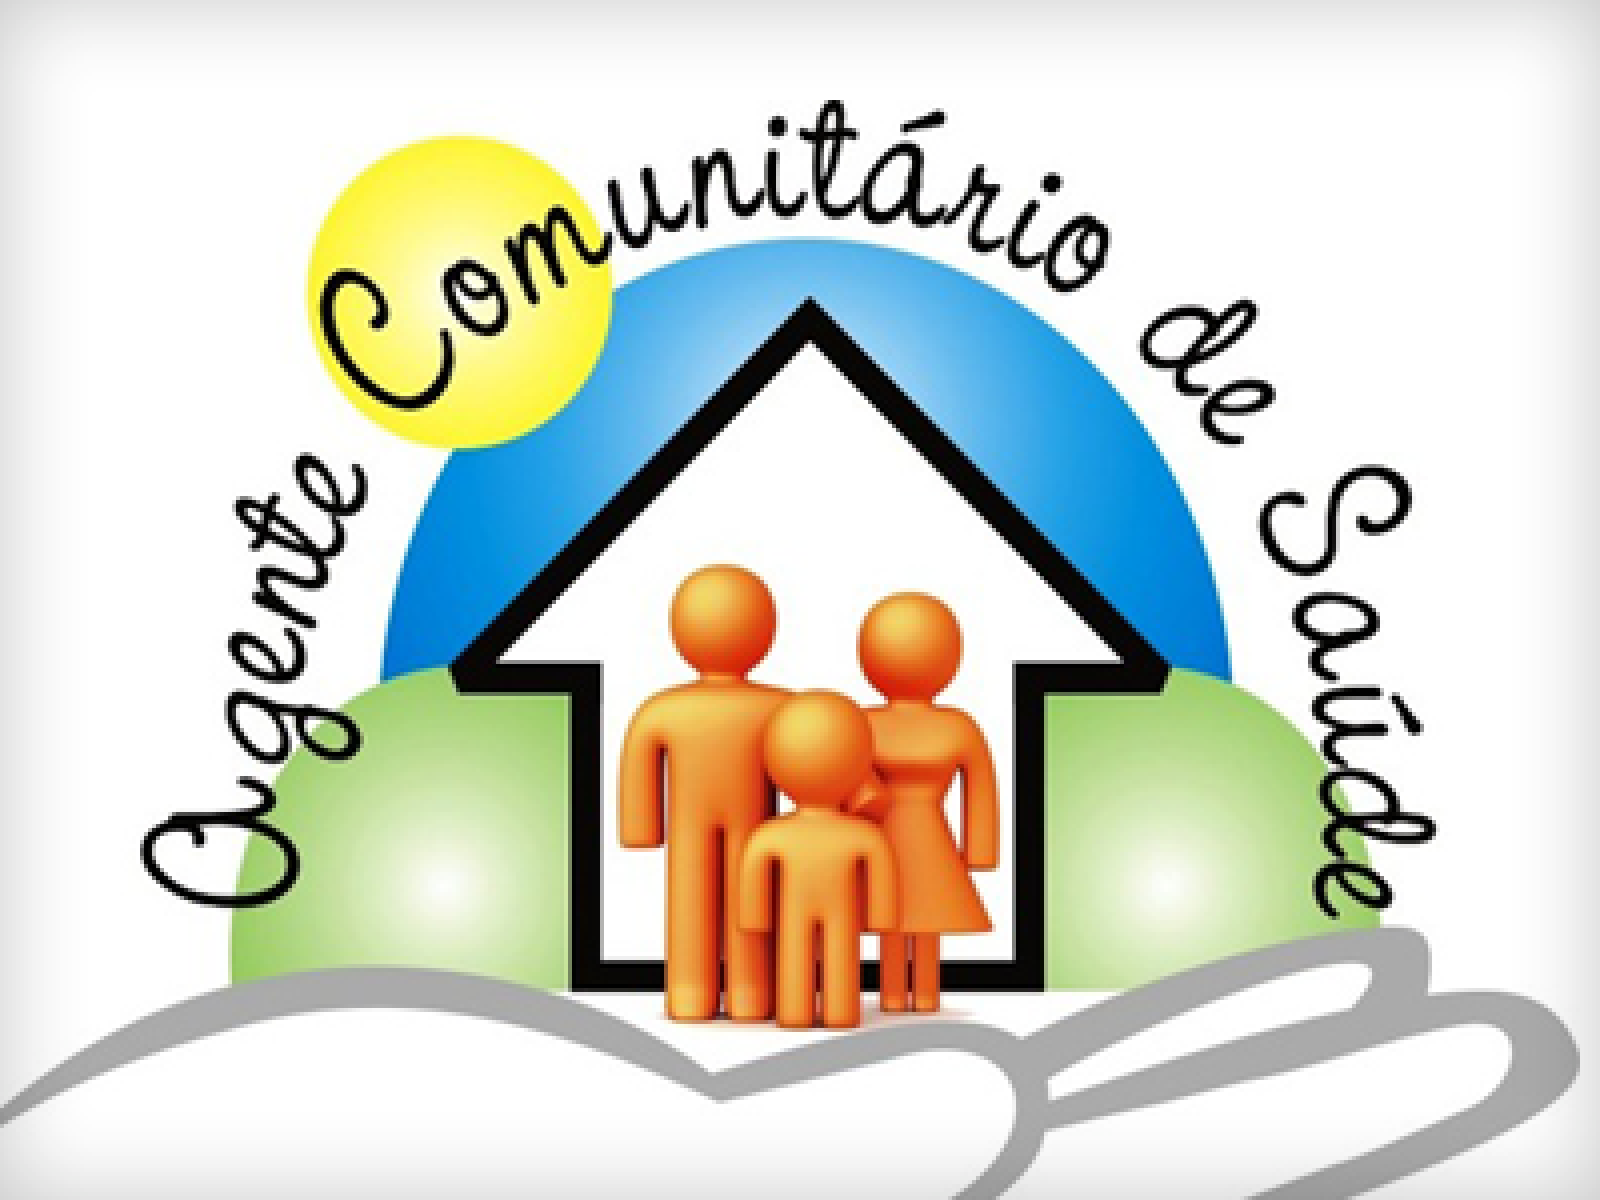 EDITAL DE CONVOCAÇÃO – REUNIÃO EXTRAORDINÁRIA COM SERVIDORES AGENTE COMUNITÁRIO DE SAÚDE